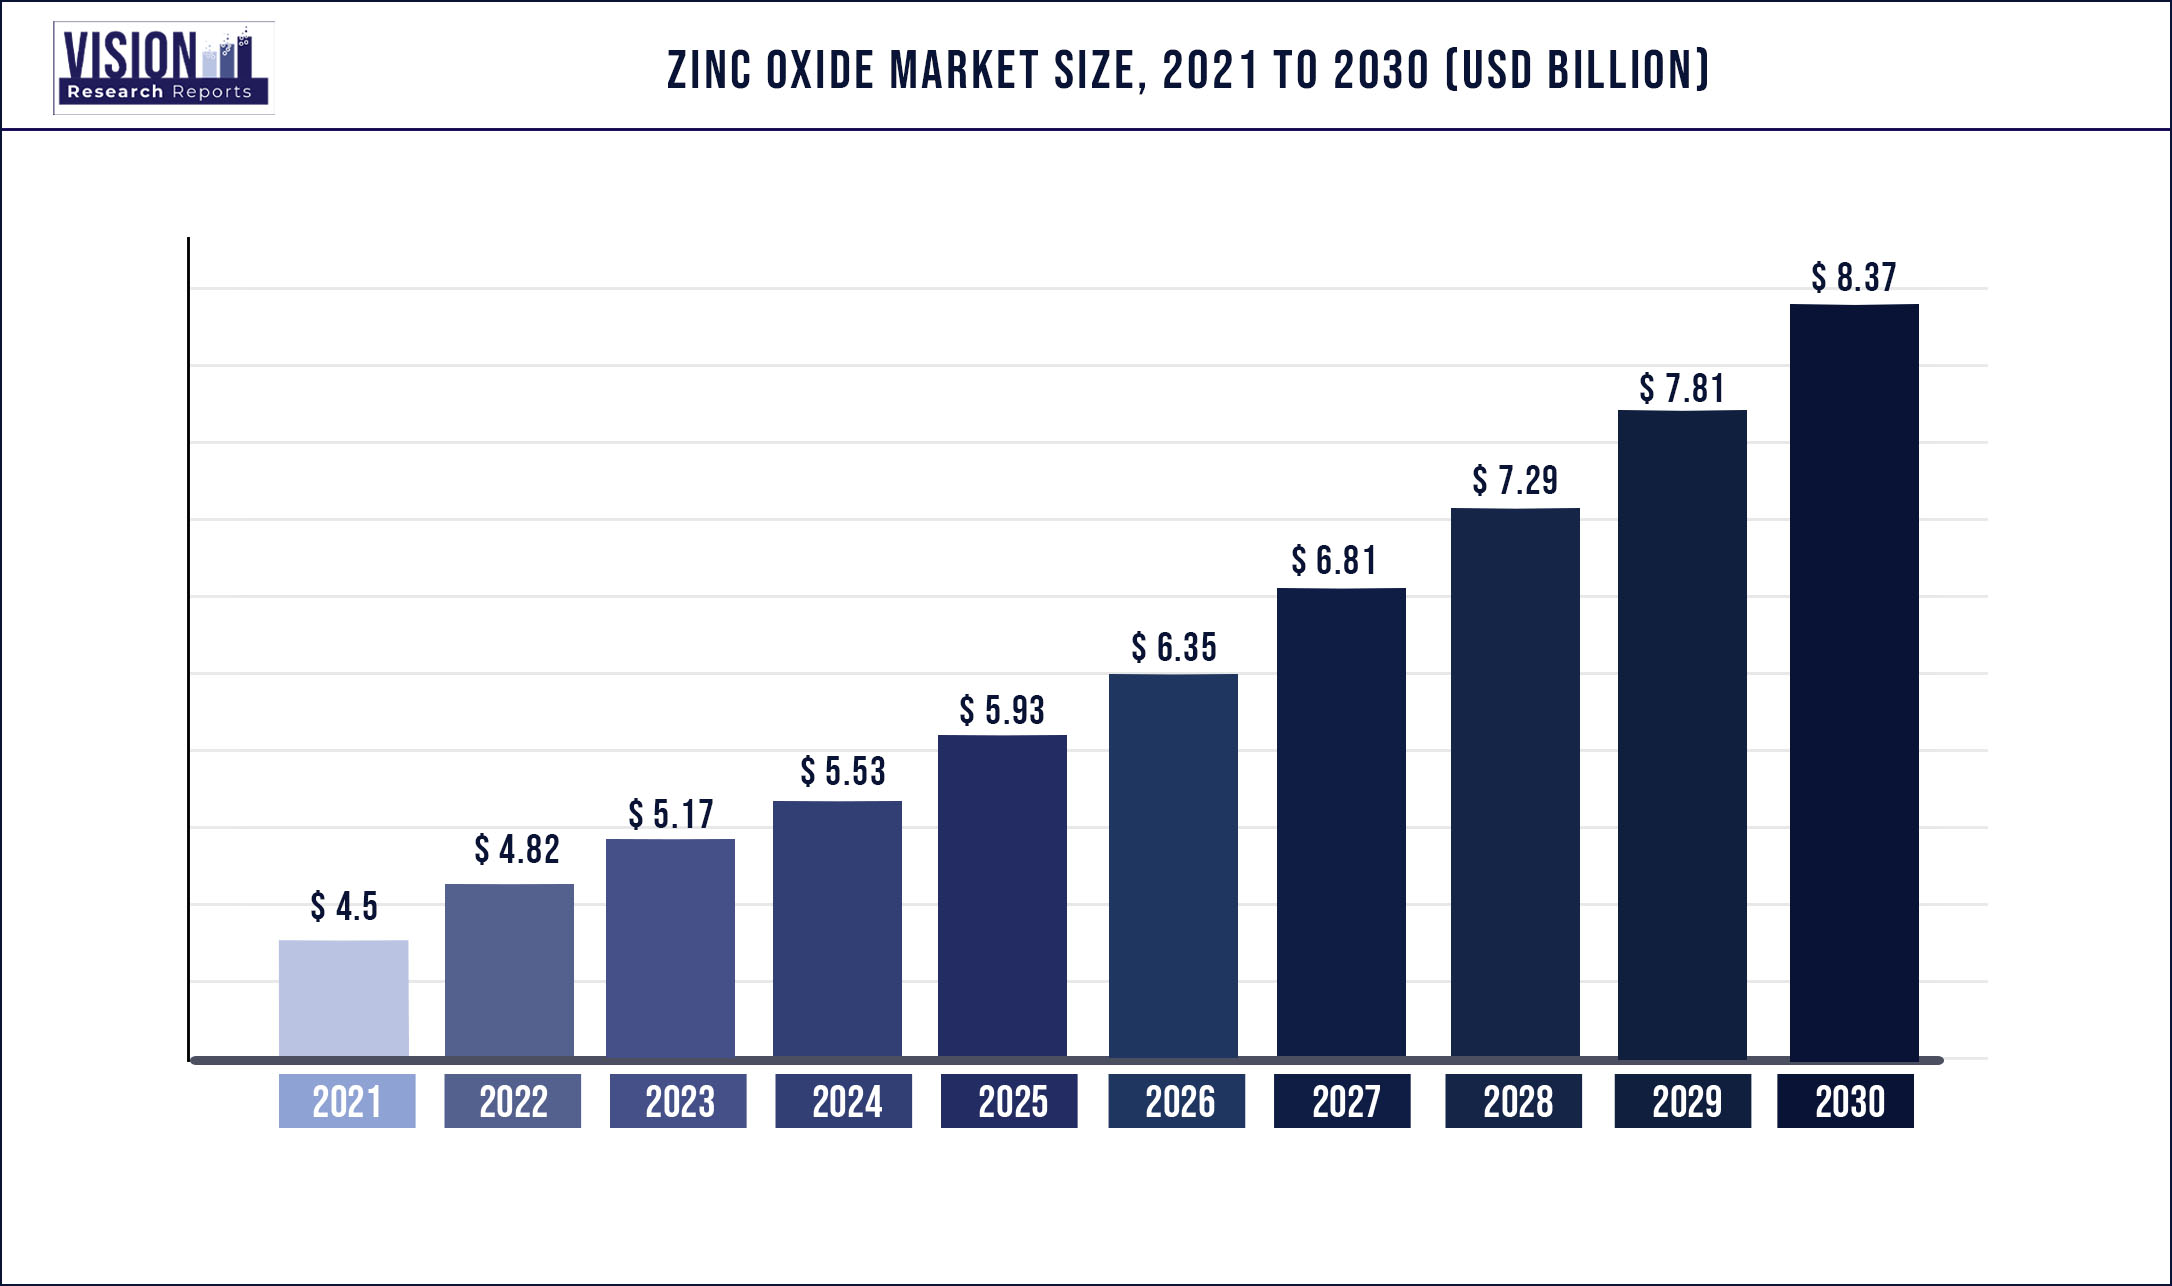 Zinc Oxide Market Size 2021 to 2030